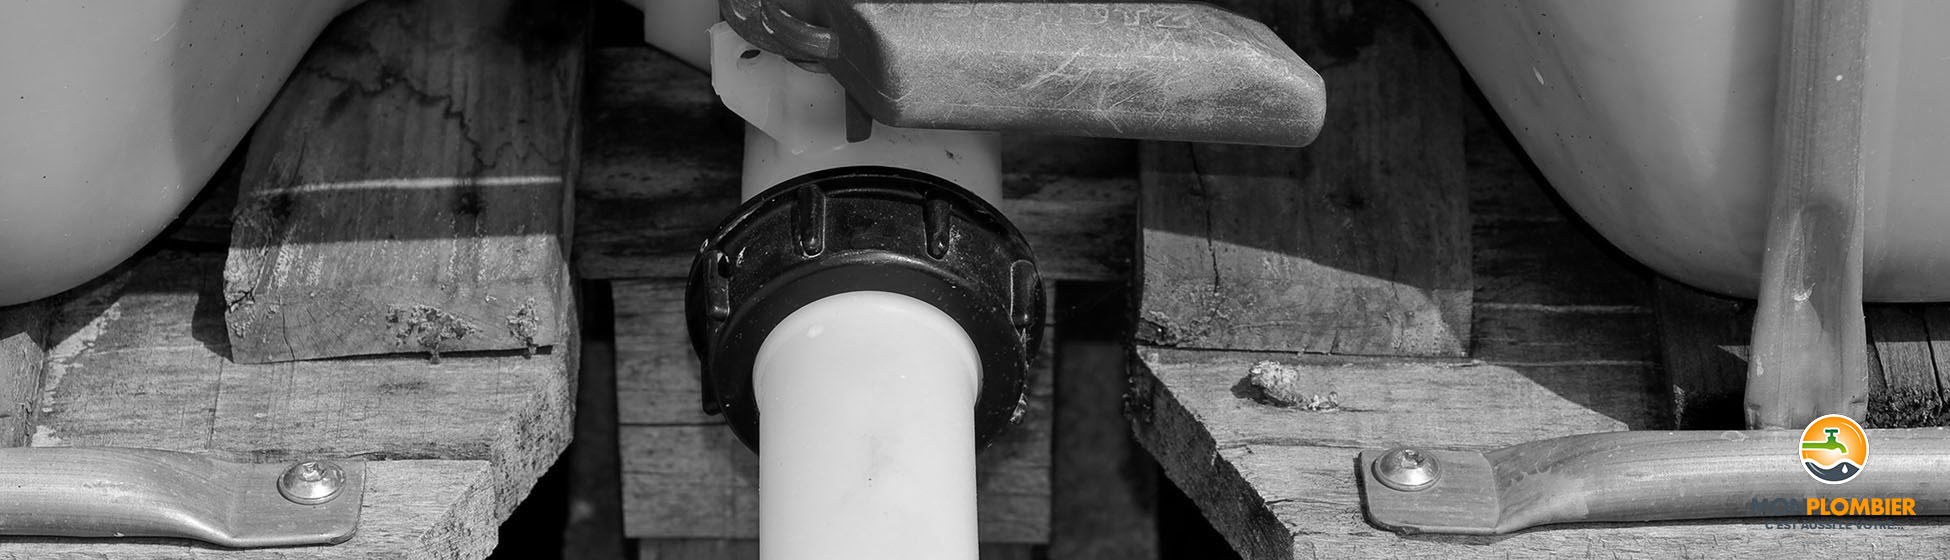 Installer une pompe sur un recuperateur d eau